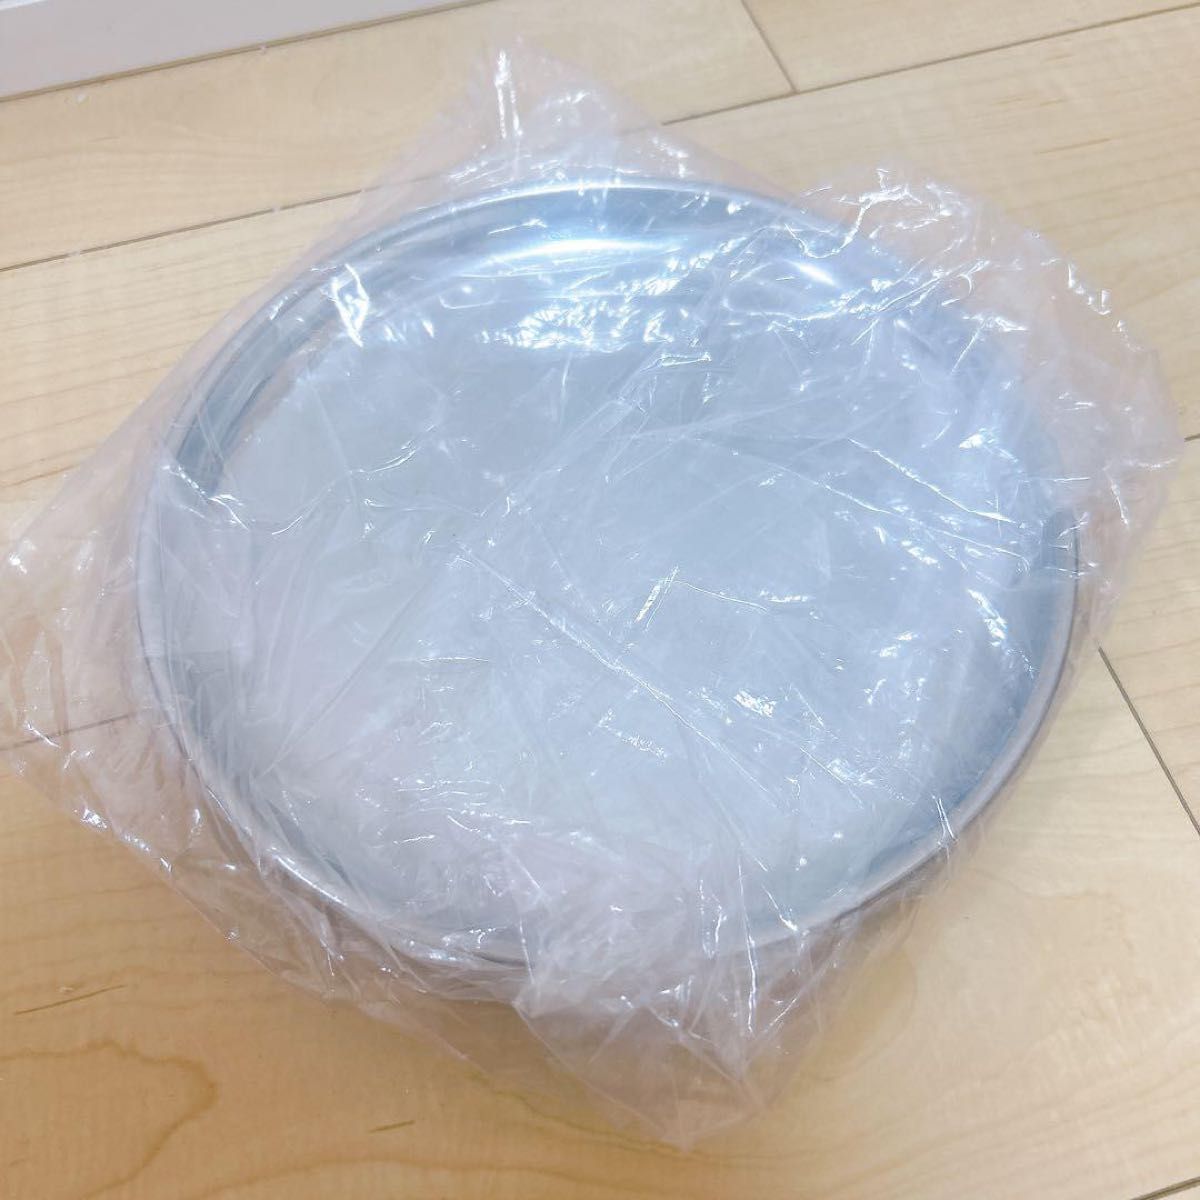 遠藤商事 小皿 業務用 市場用丸皿 20cm 18-0ステンレス 日本製